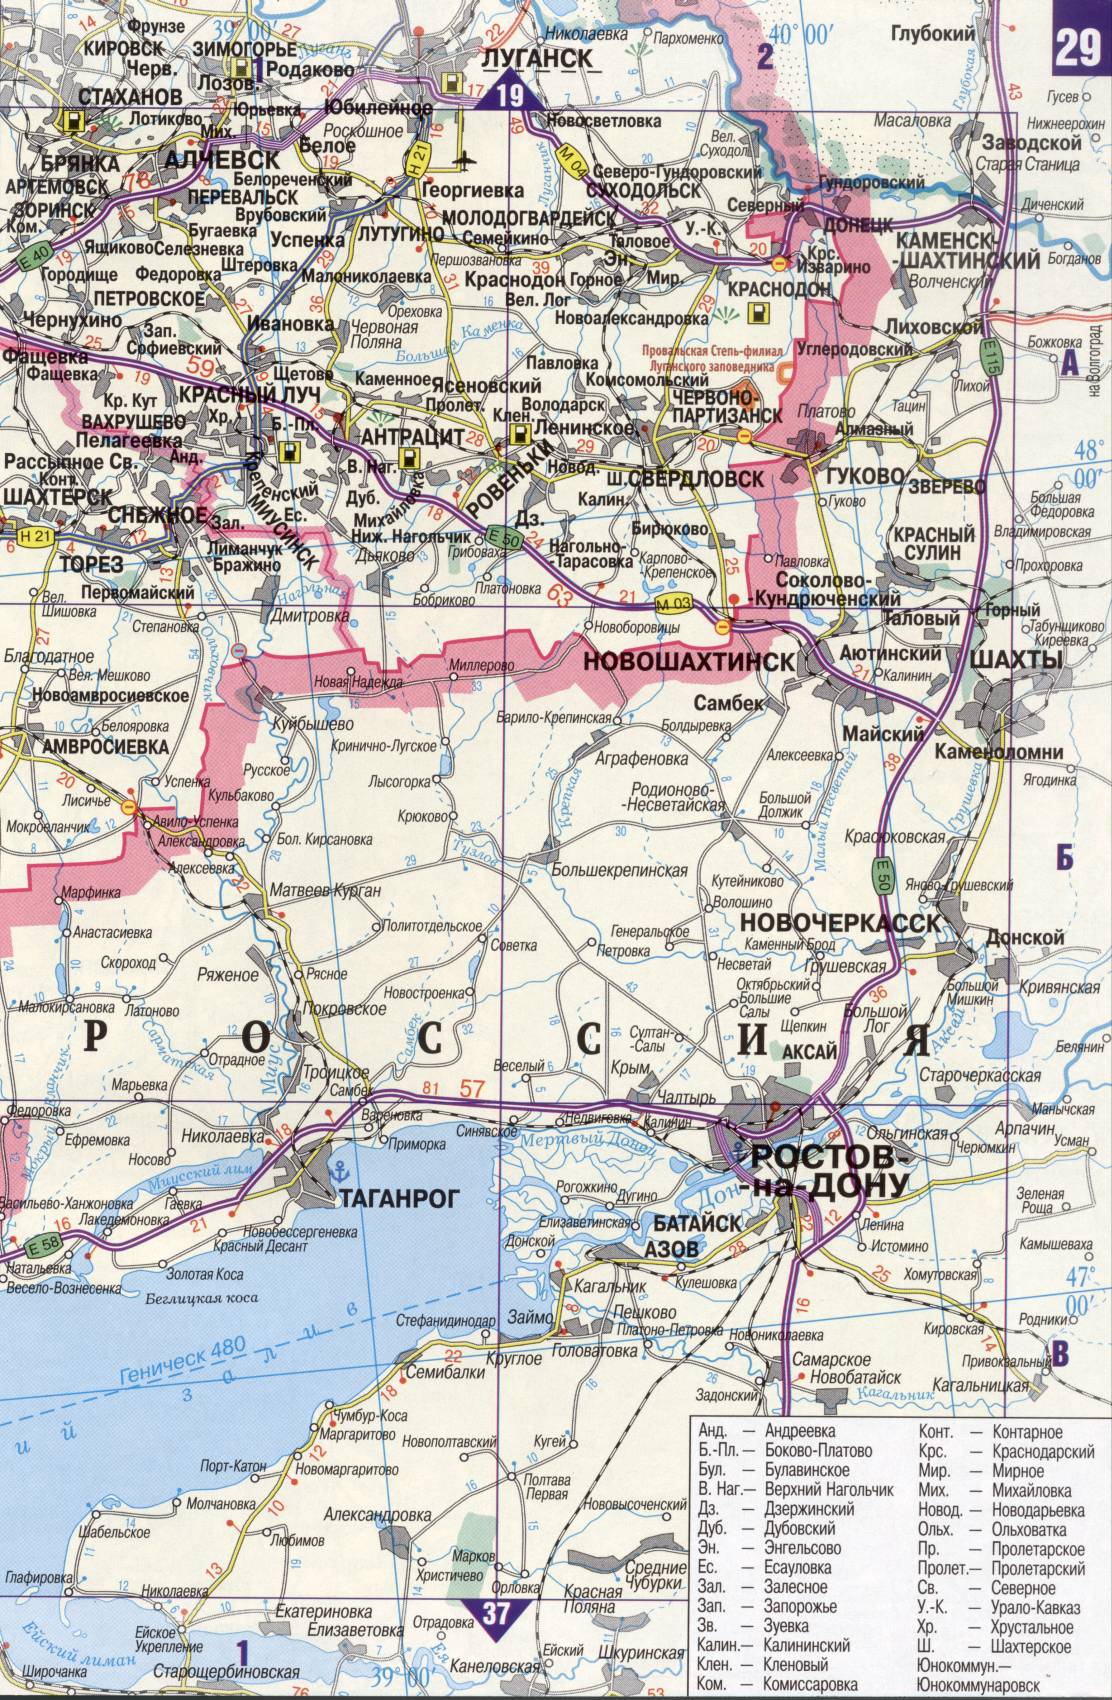 Карта Украины. Подробная карта дорог Украина из автомобильног атласа. скачать бесплатно, J2